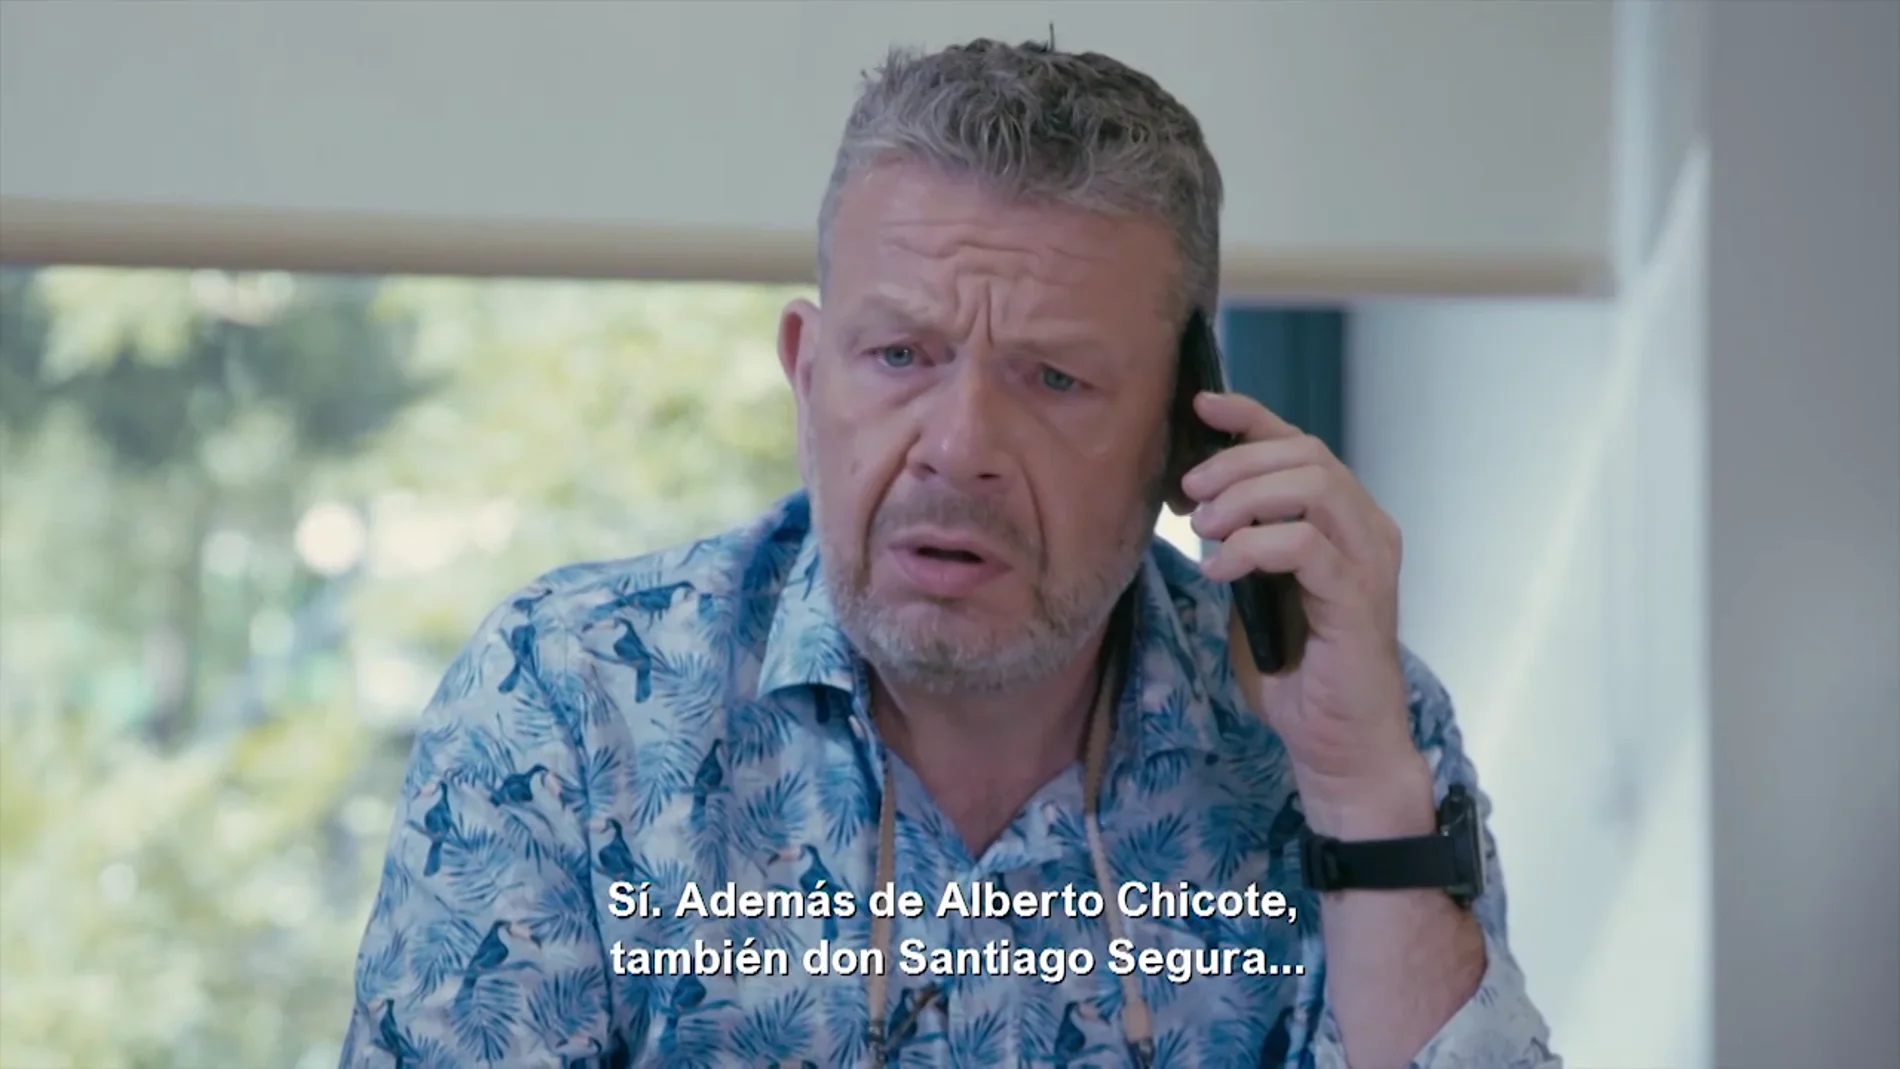 La tensa llamada de Alberto Chicote y un vendedor de Reduslim: En cuanto  le cuelgue voy a ir a la comisaría